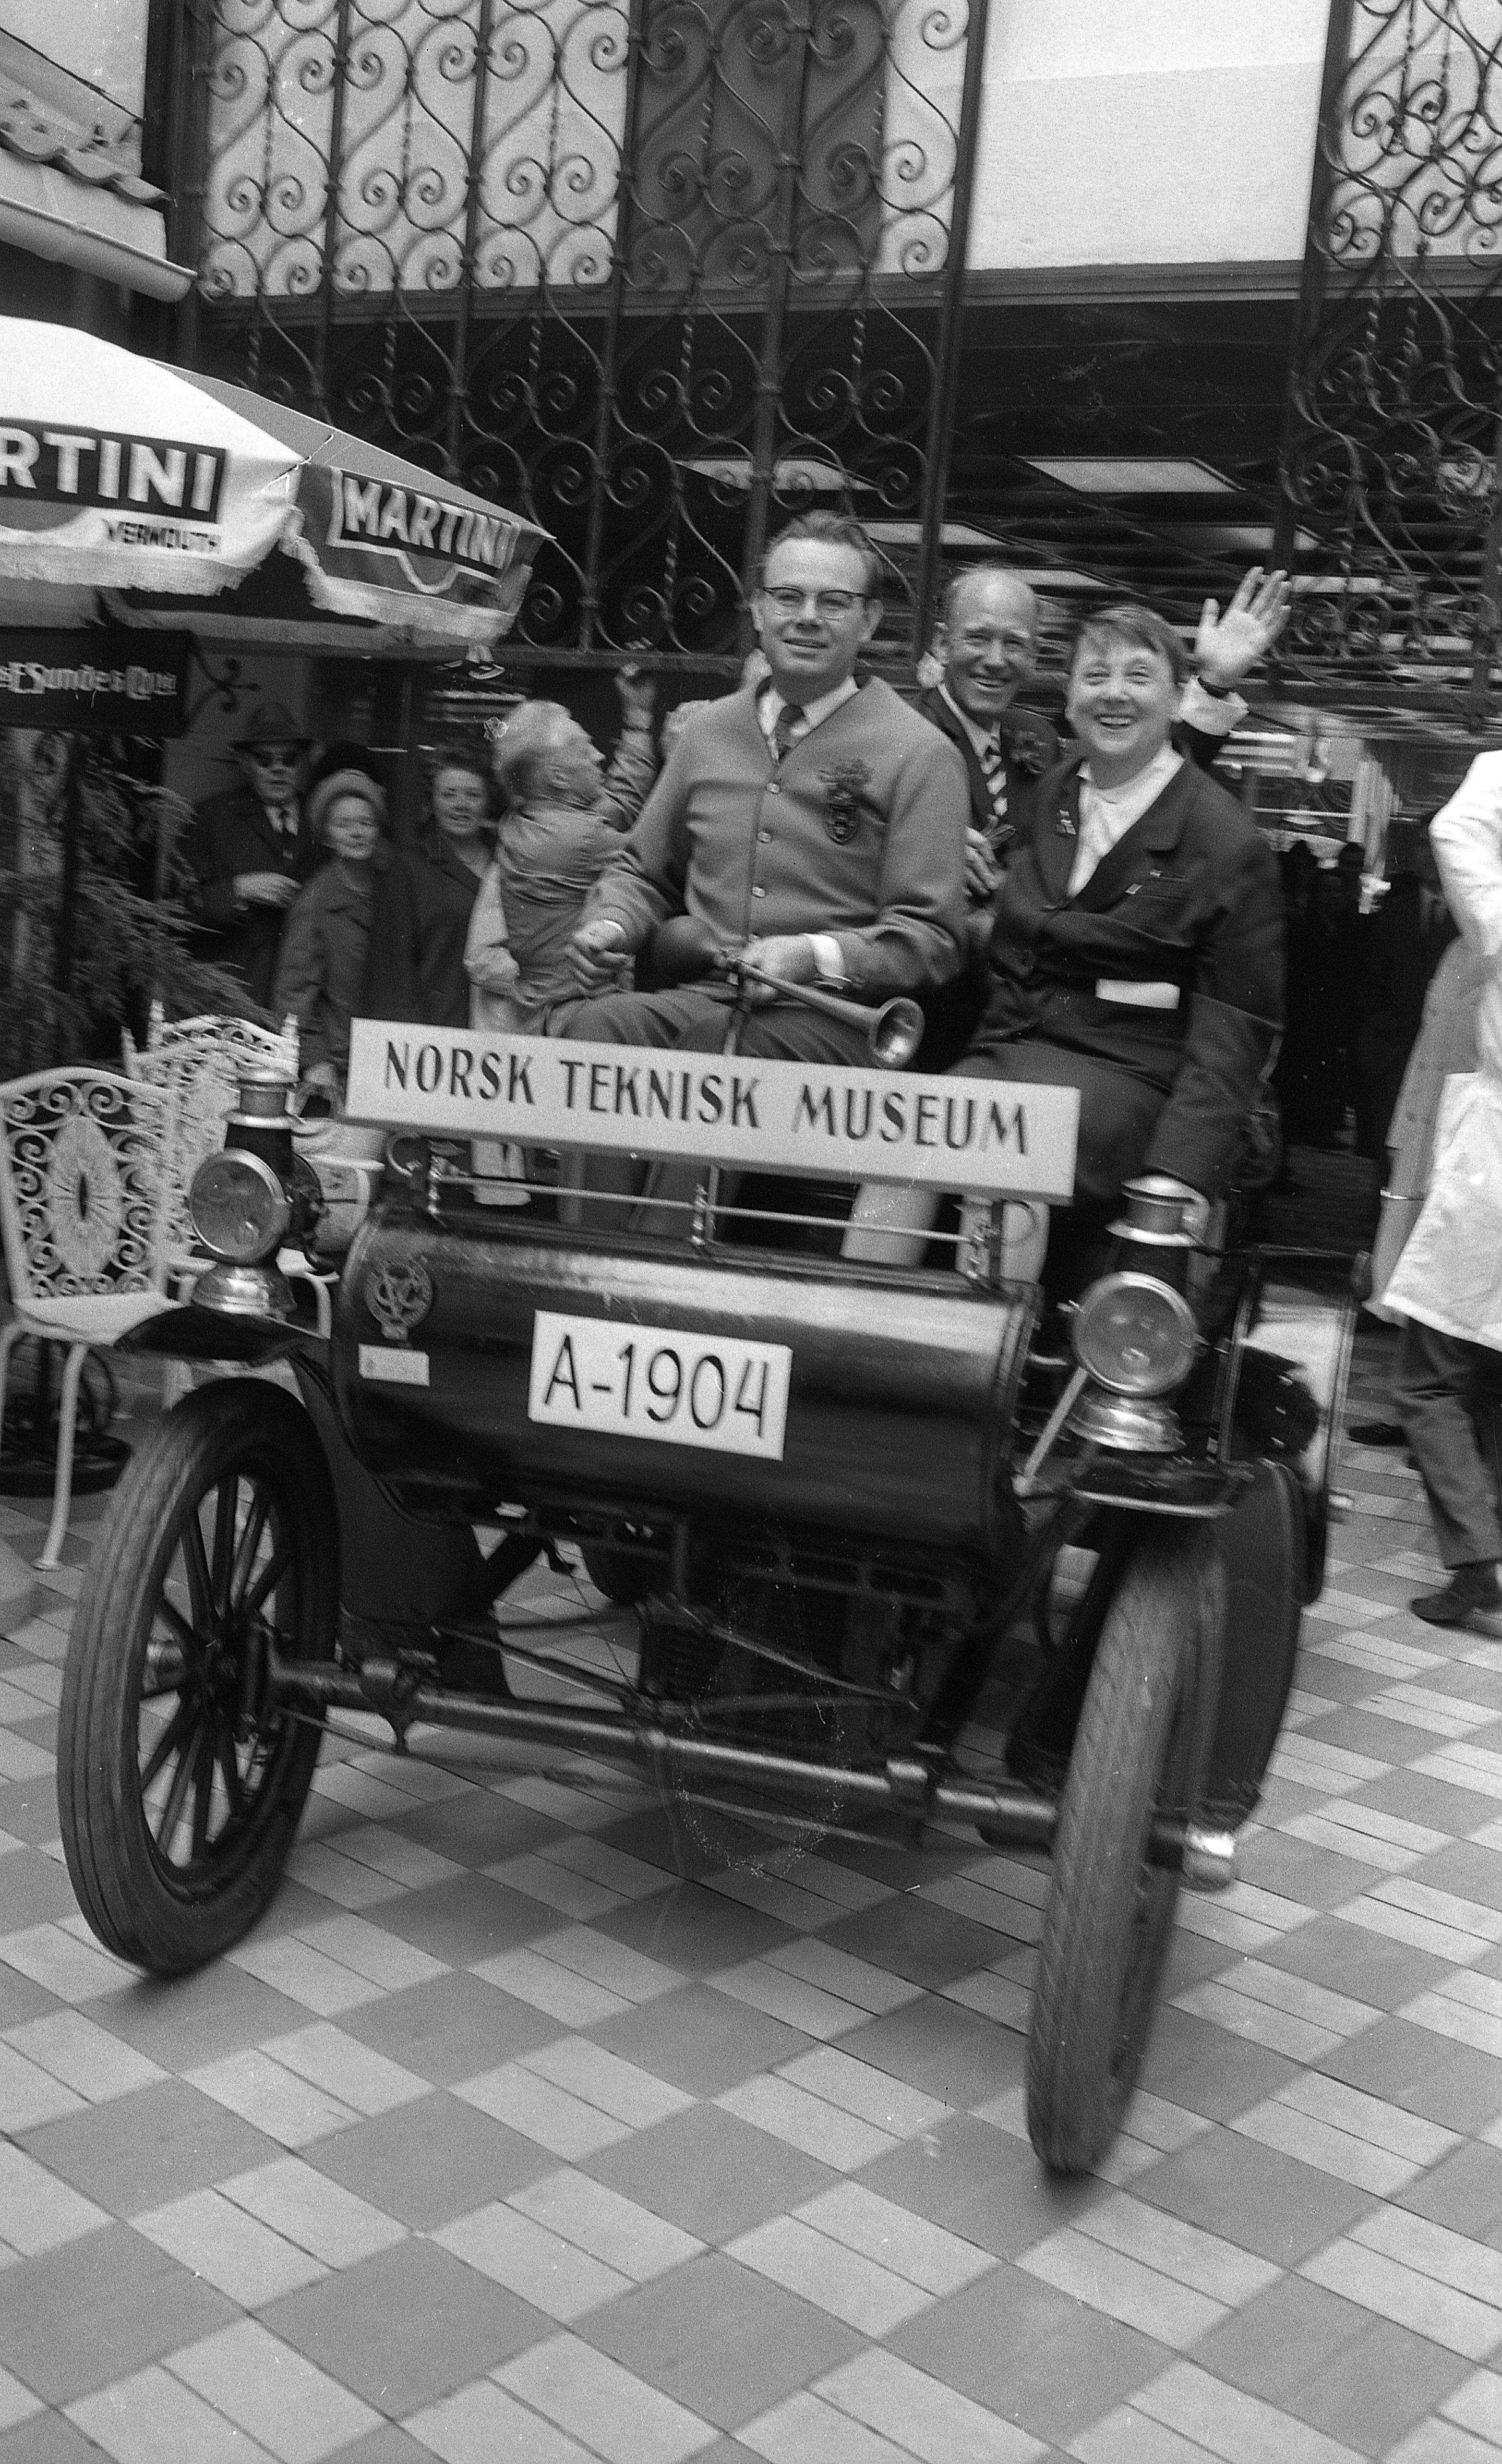 Åpningen av gågata «Strøget» mellom Torggata og Storgata 21. mai 1970. Olav Thon (i midten) og turistsjef Alfhild Hovdan i en veteranbil fra Norsk Teknisk Museum.